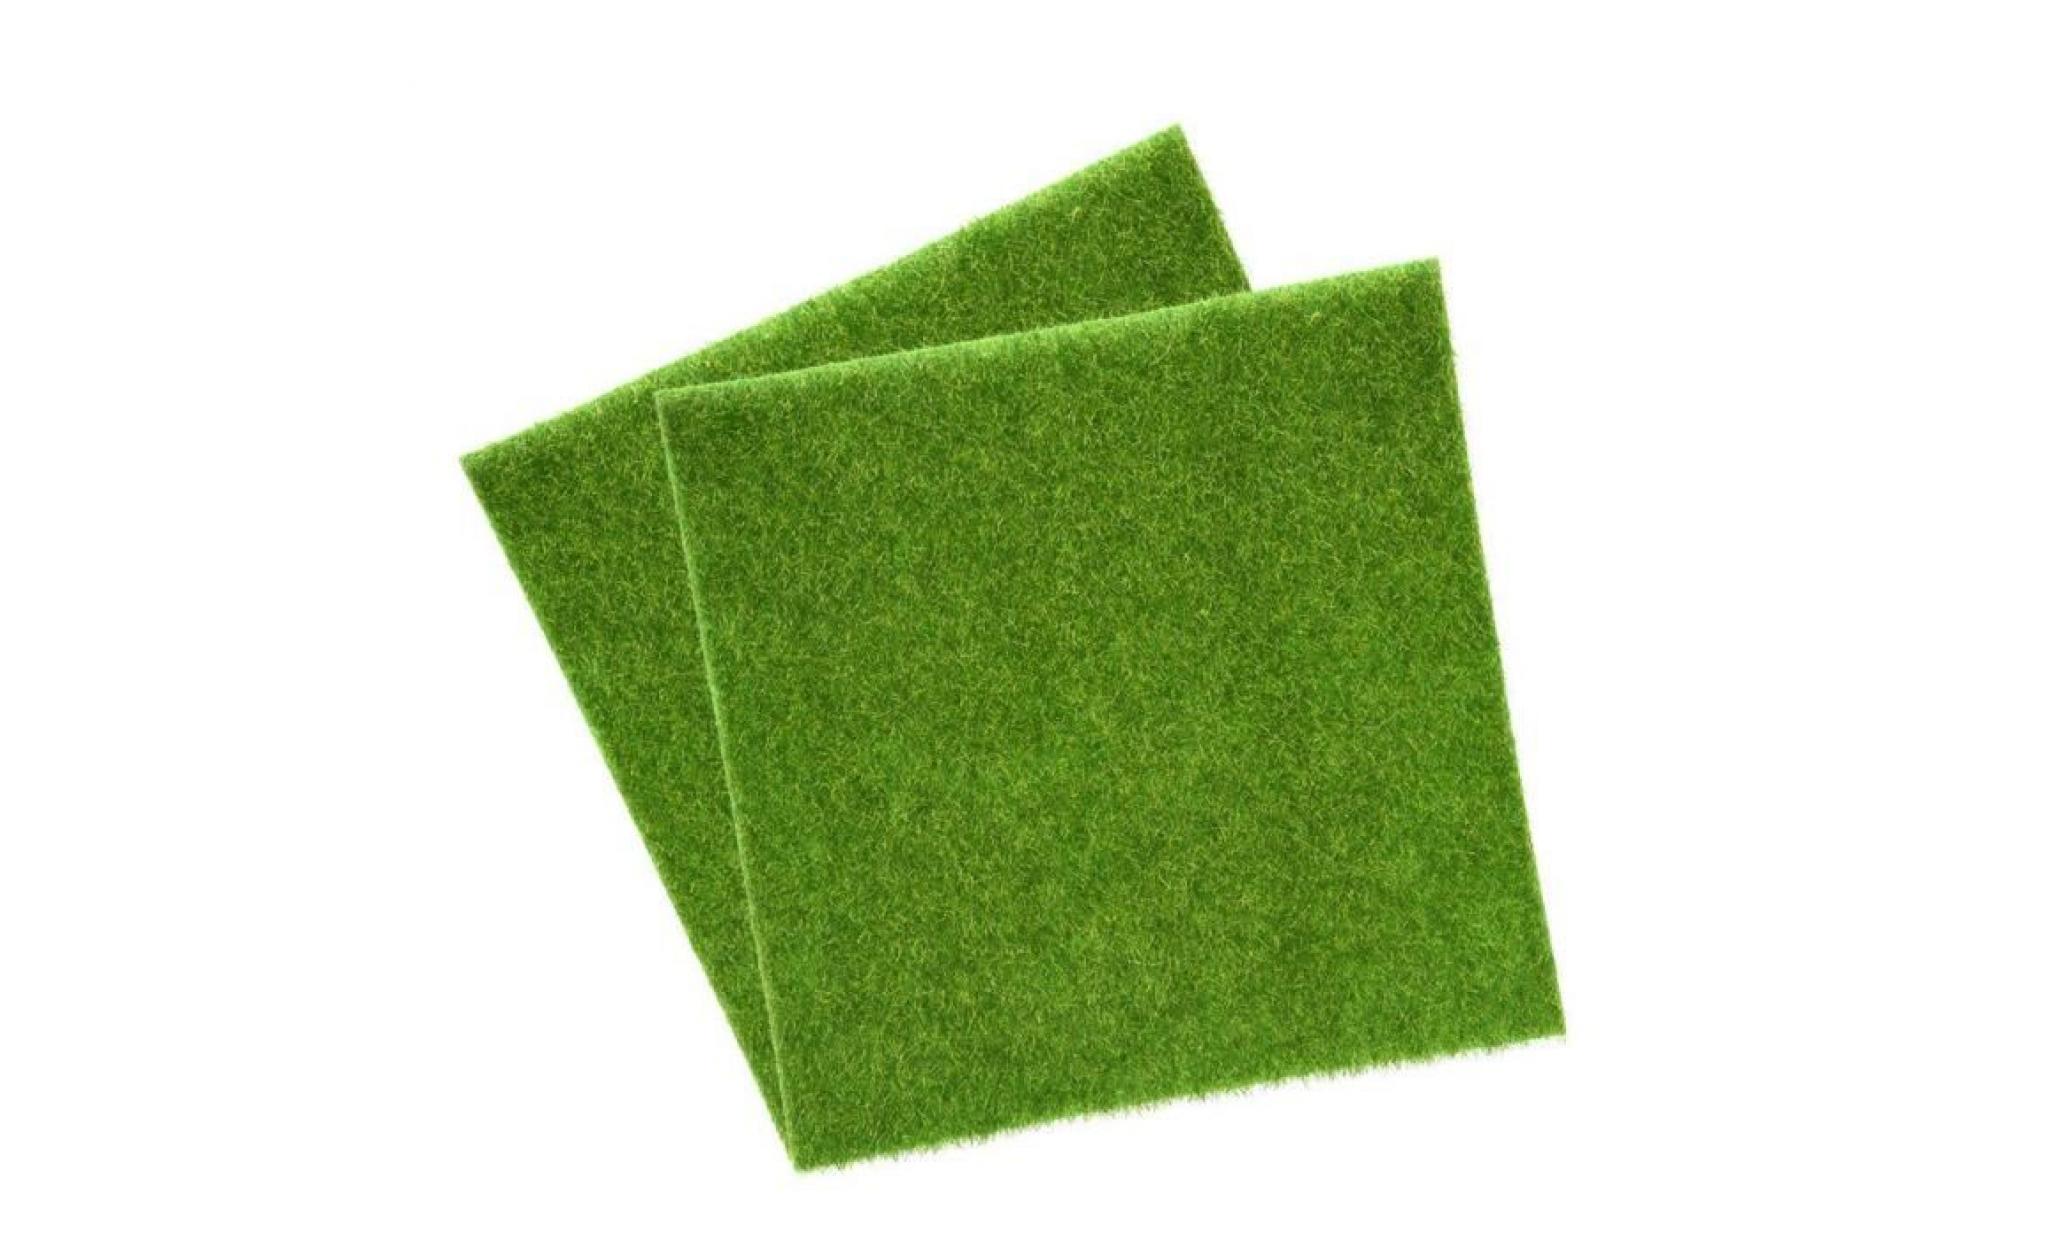 tapis de gazon artificiel herbe en pour interieur et exterieur gazon synthetique vert decoration de maison 30cmx30cm 2pcs